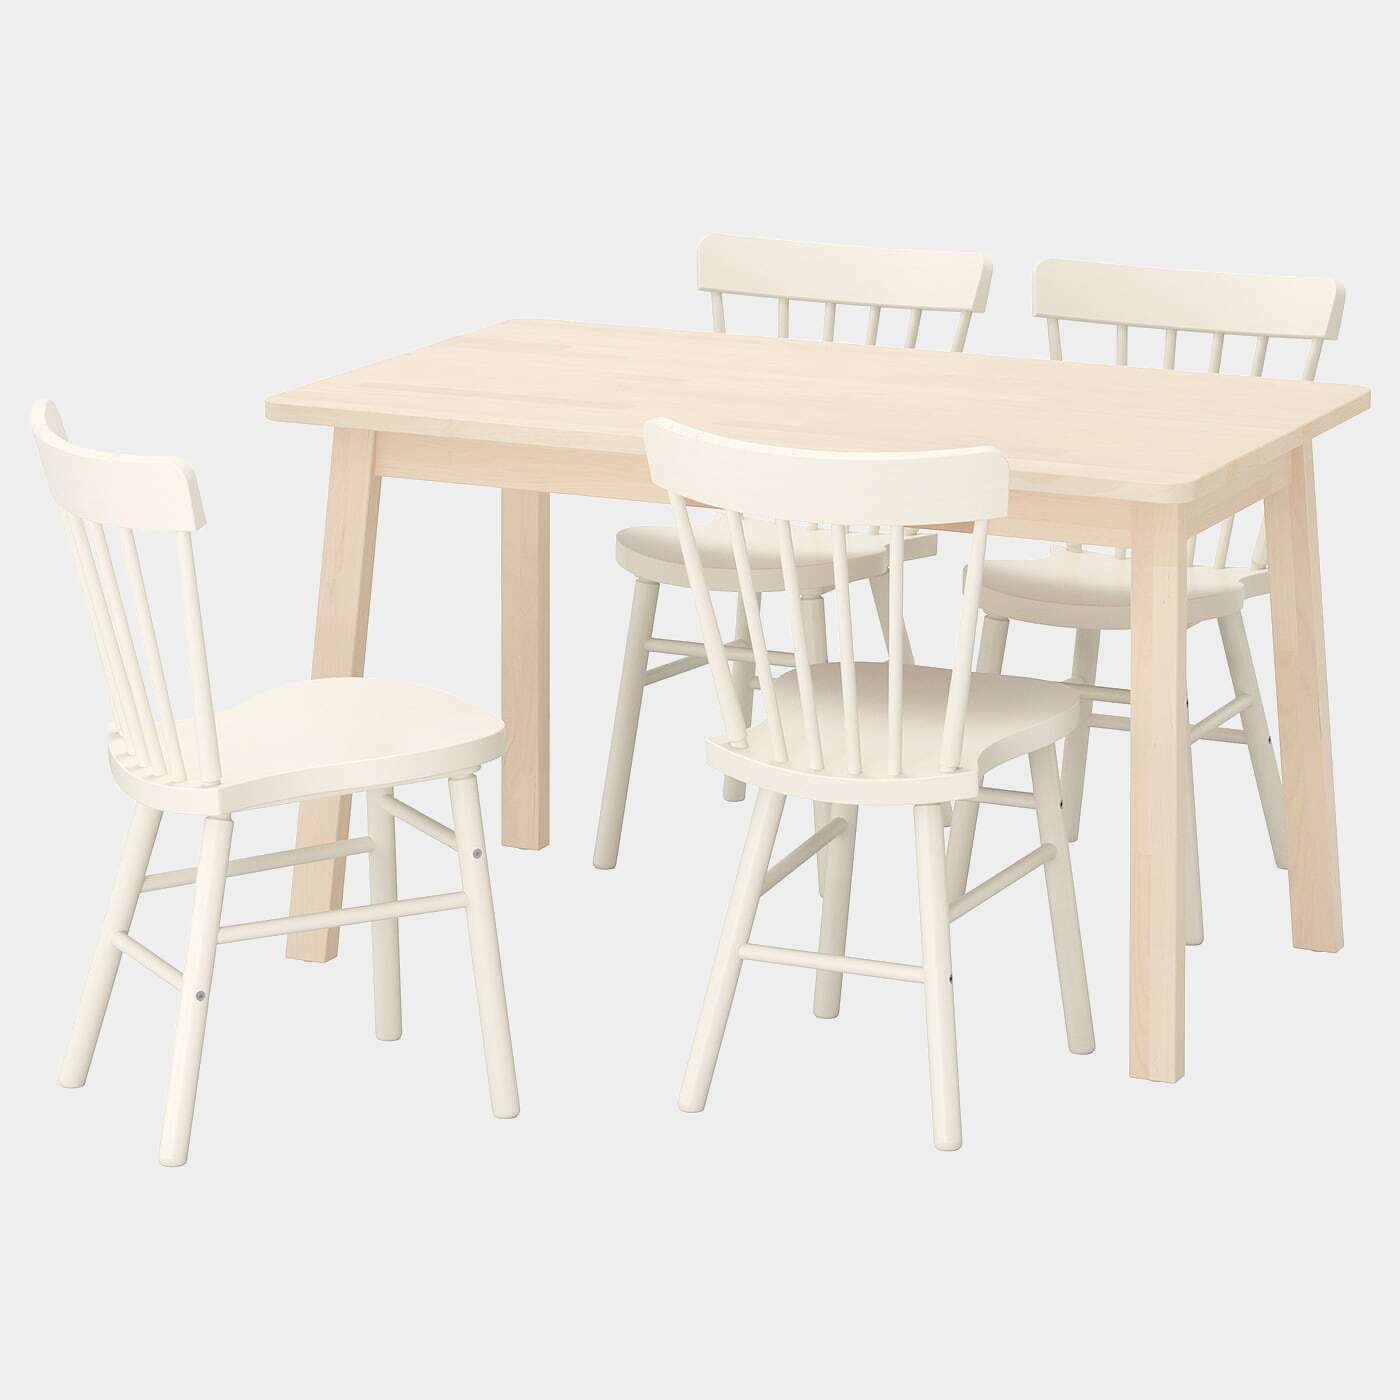 NORRÅKER / NORRARYD Tisch und 4 Stühle  - Essplatzgruppe - Möbel Ideen für dein Zuhause von Home Trends. Möbel Trends von Social Media Influencer für dein Skandi Zuhause.